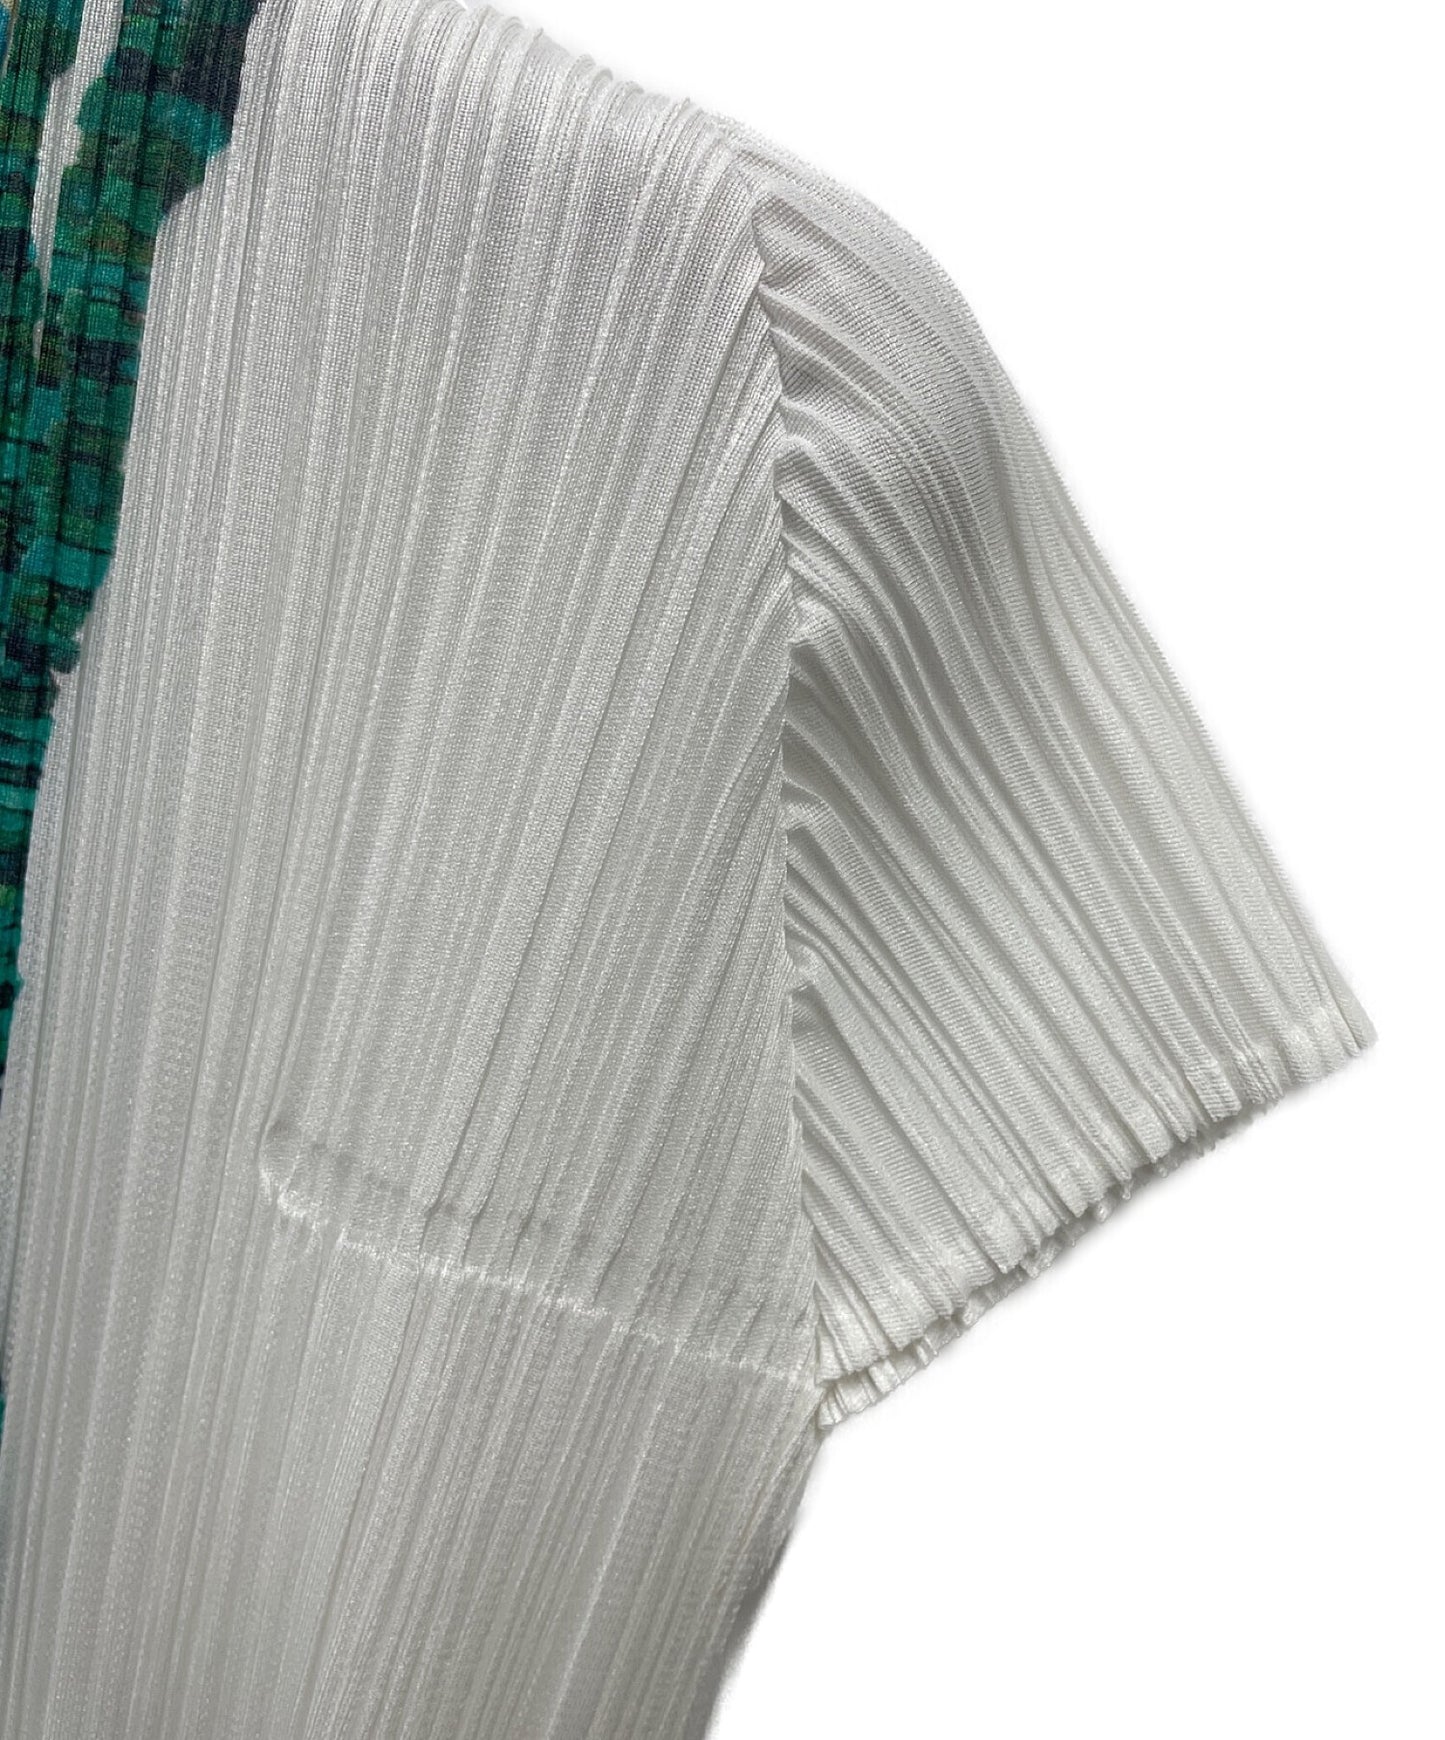 褶皺請轉移打印打印的切割和縫製PP21-JK691